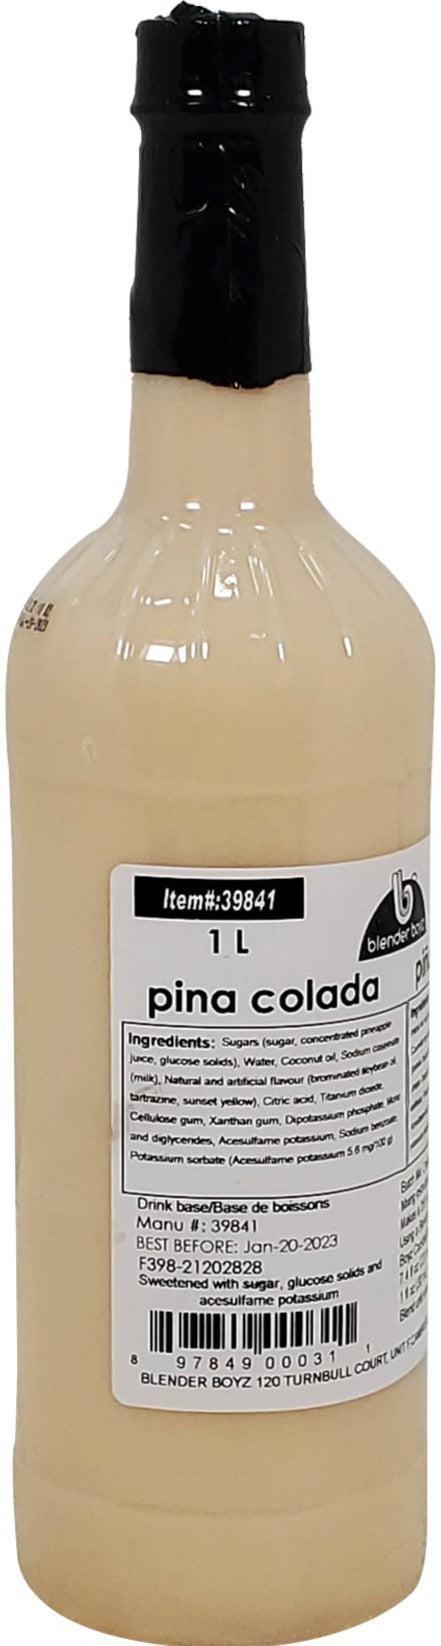 Blender Boyz - Pina Colada - Packet